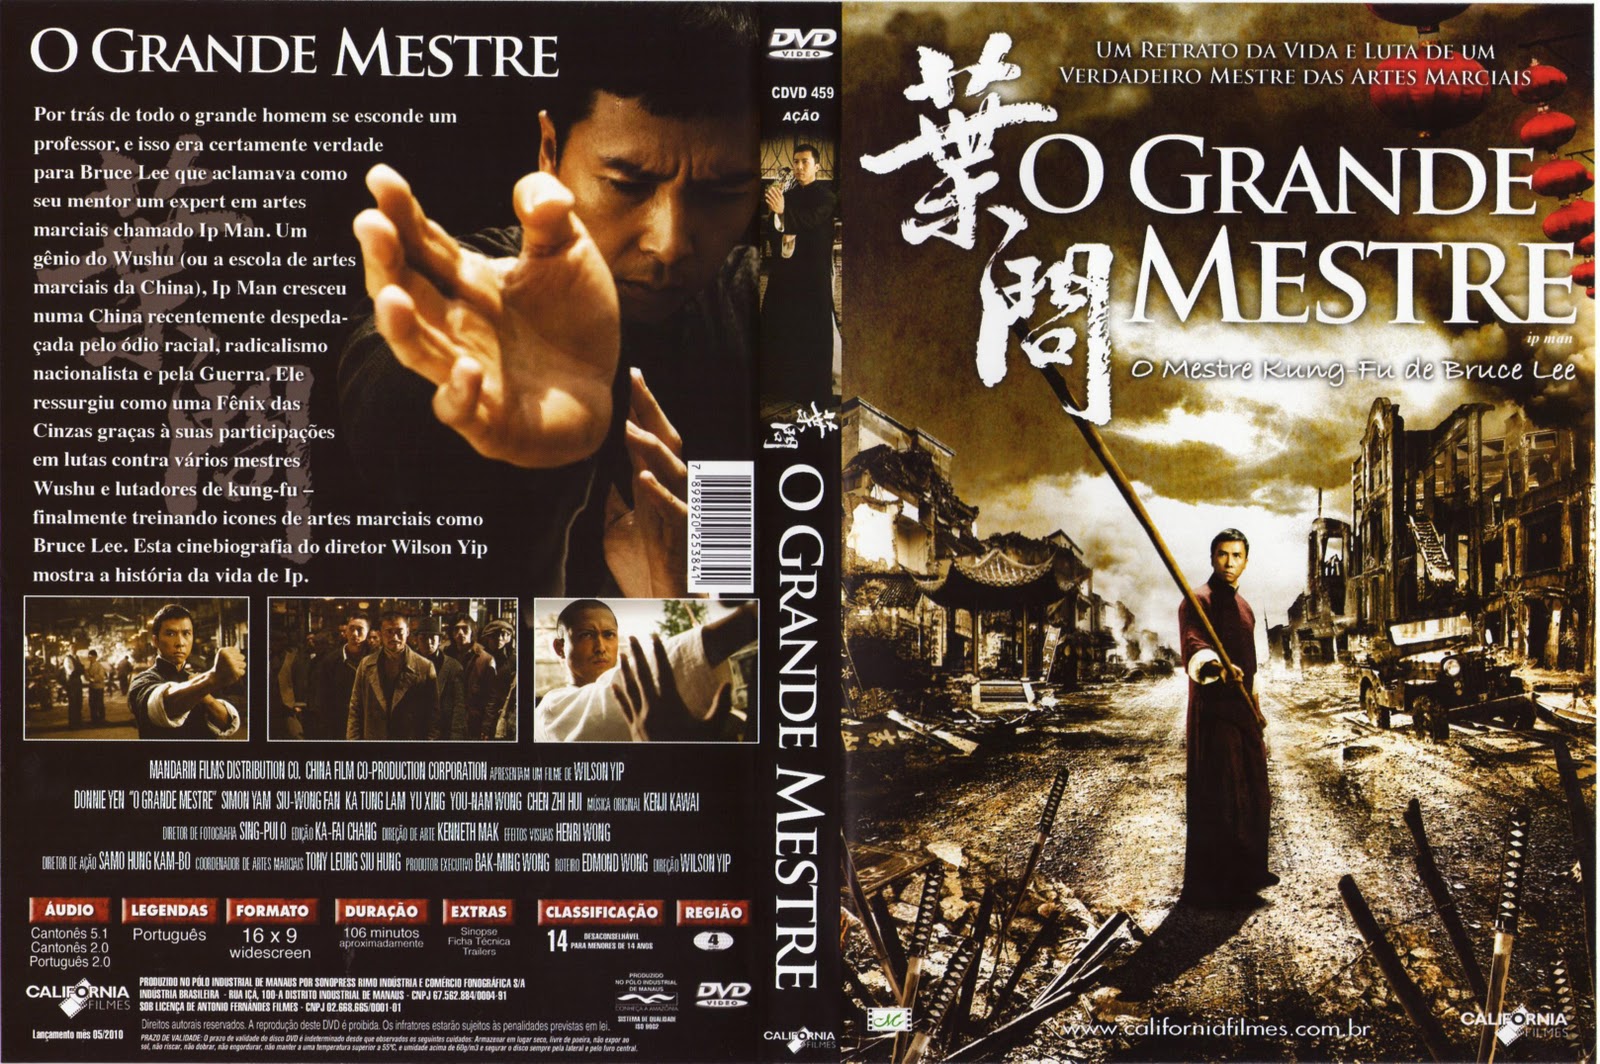 O GRANDE MESTRE (FILME) - Óliver Discos